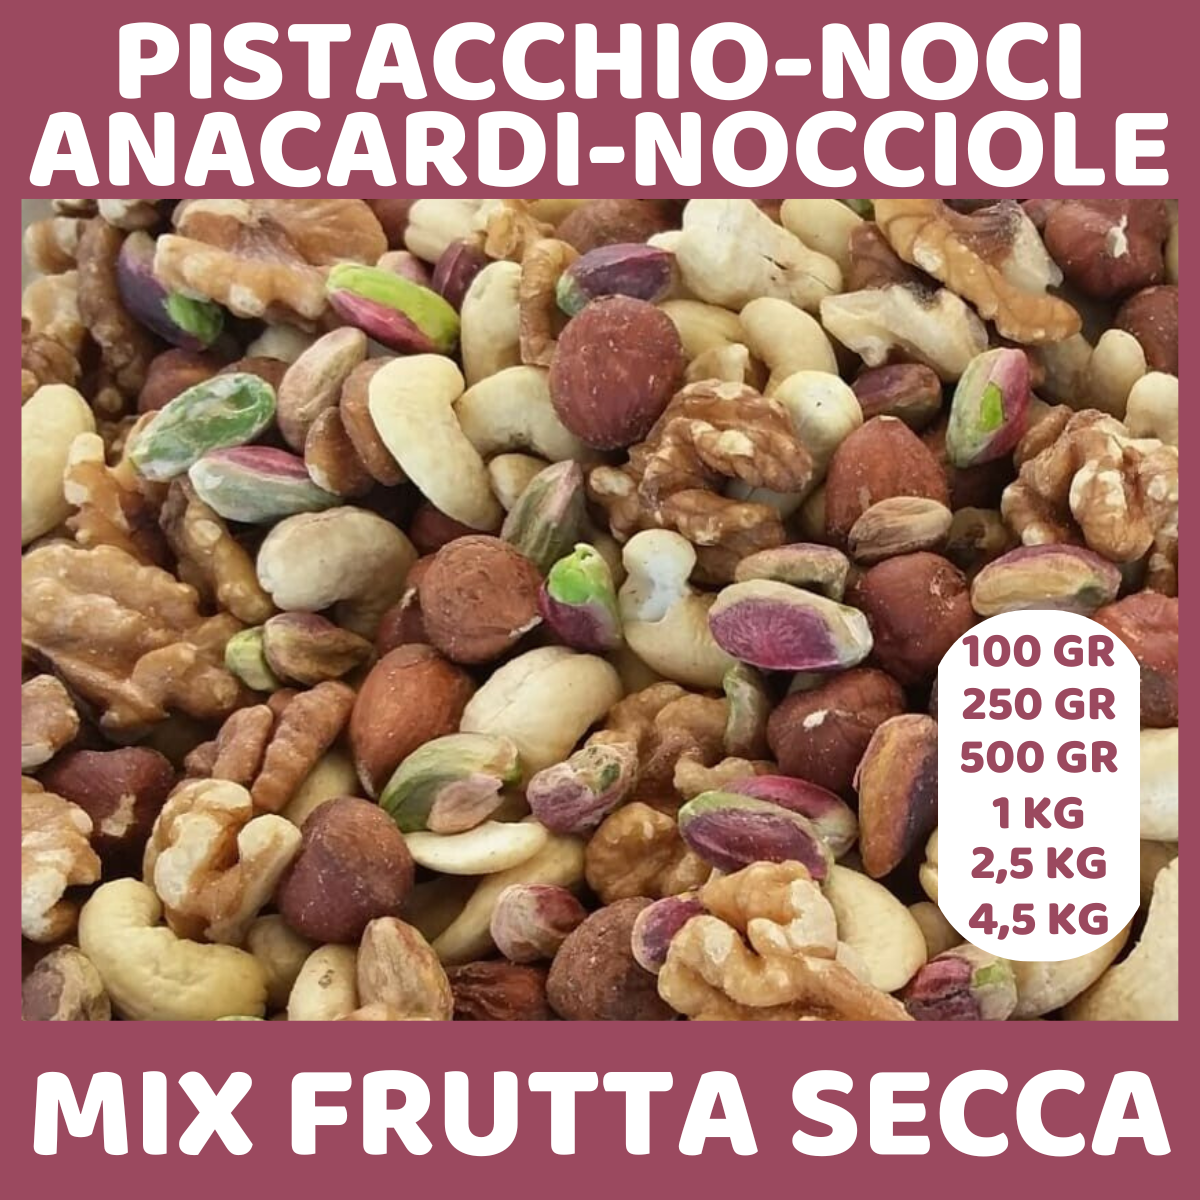 mix di noci, nocciole, anacardi e pistacchio gusti d'aprile